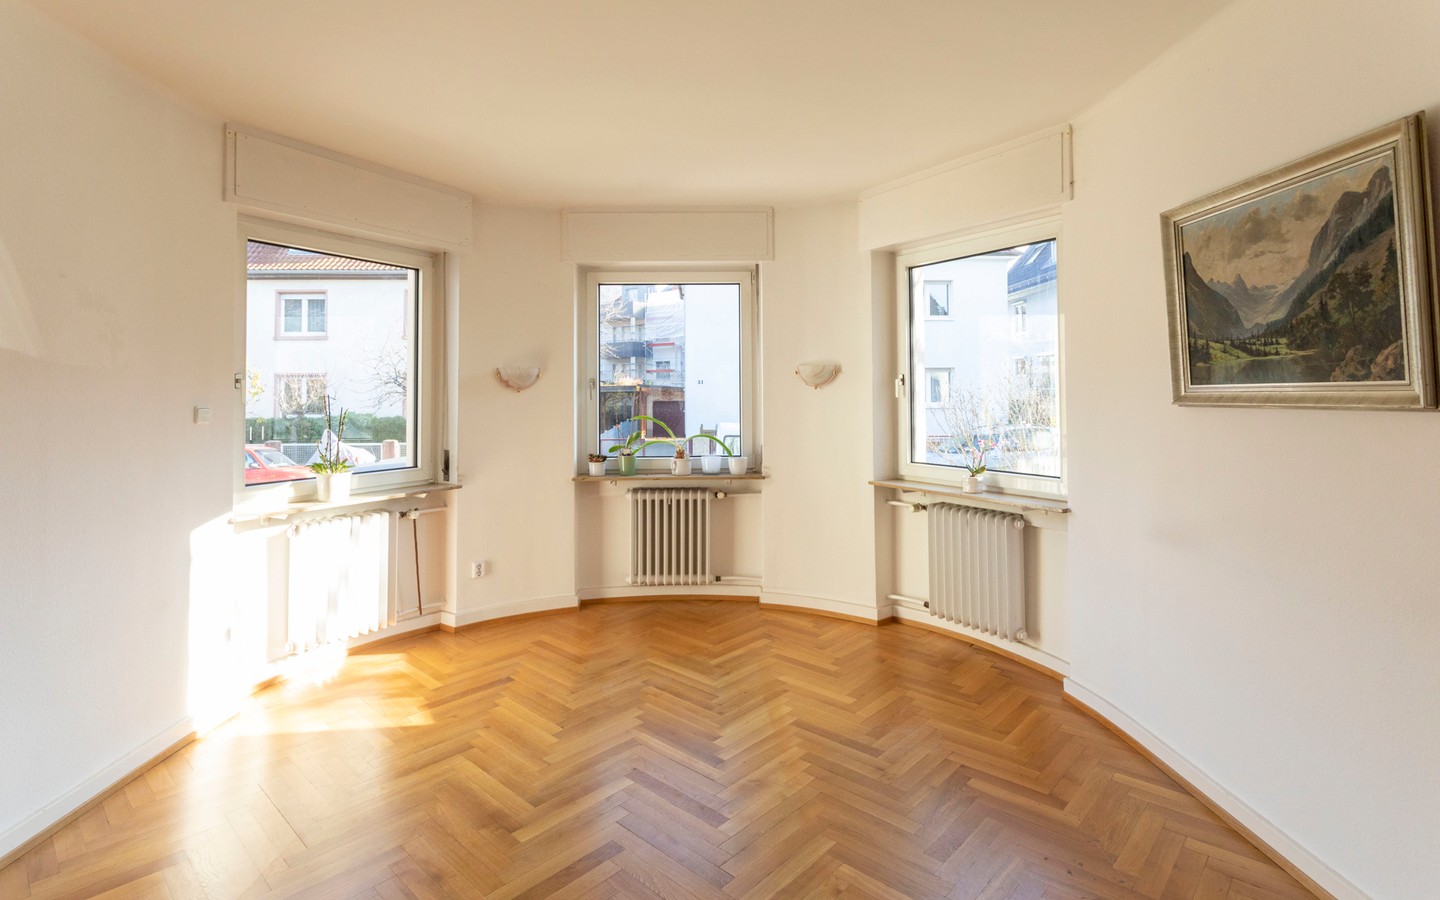 Wohnbereich  - Rarität: Freistehendes Einfamilienhaus auf ca. 700qm großem Grundstück in der Heidelberger Weststadt